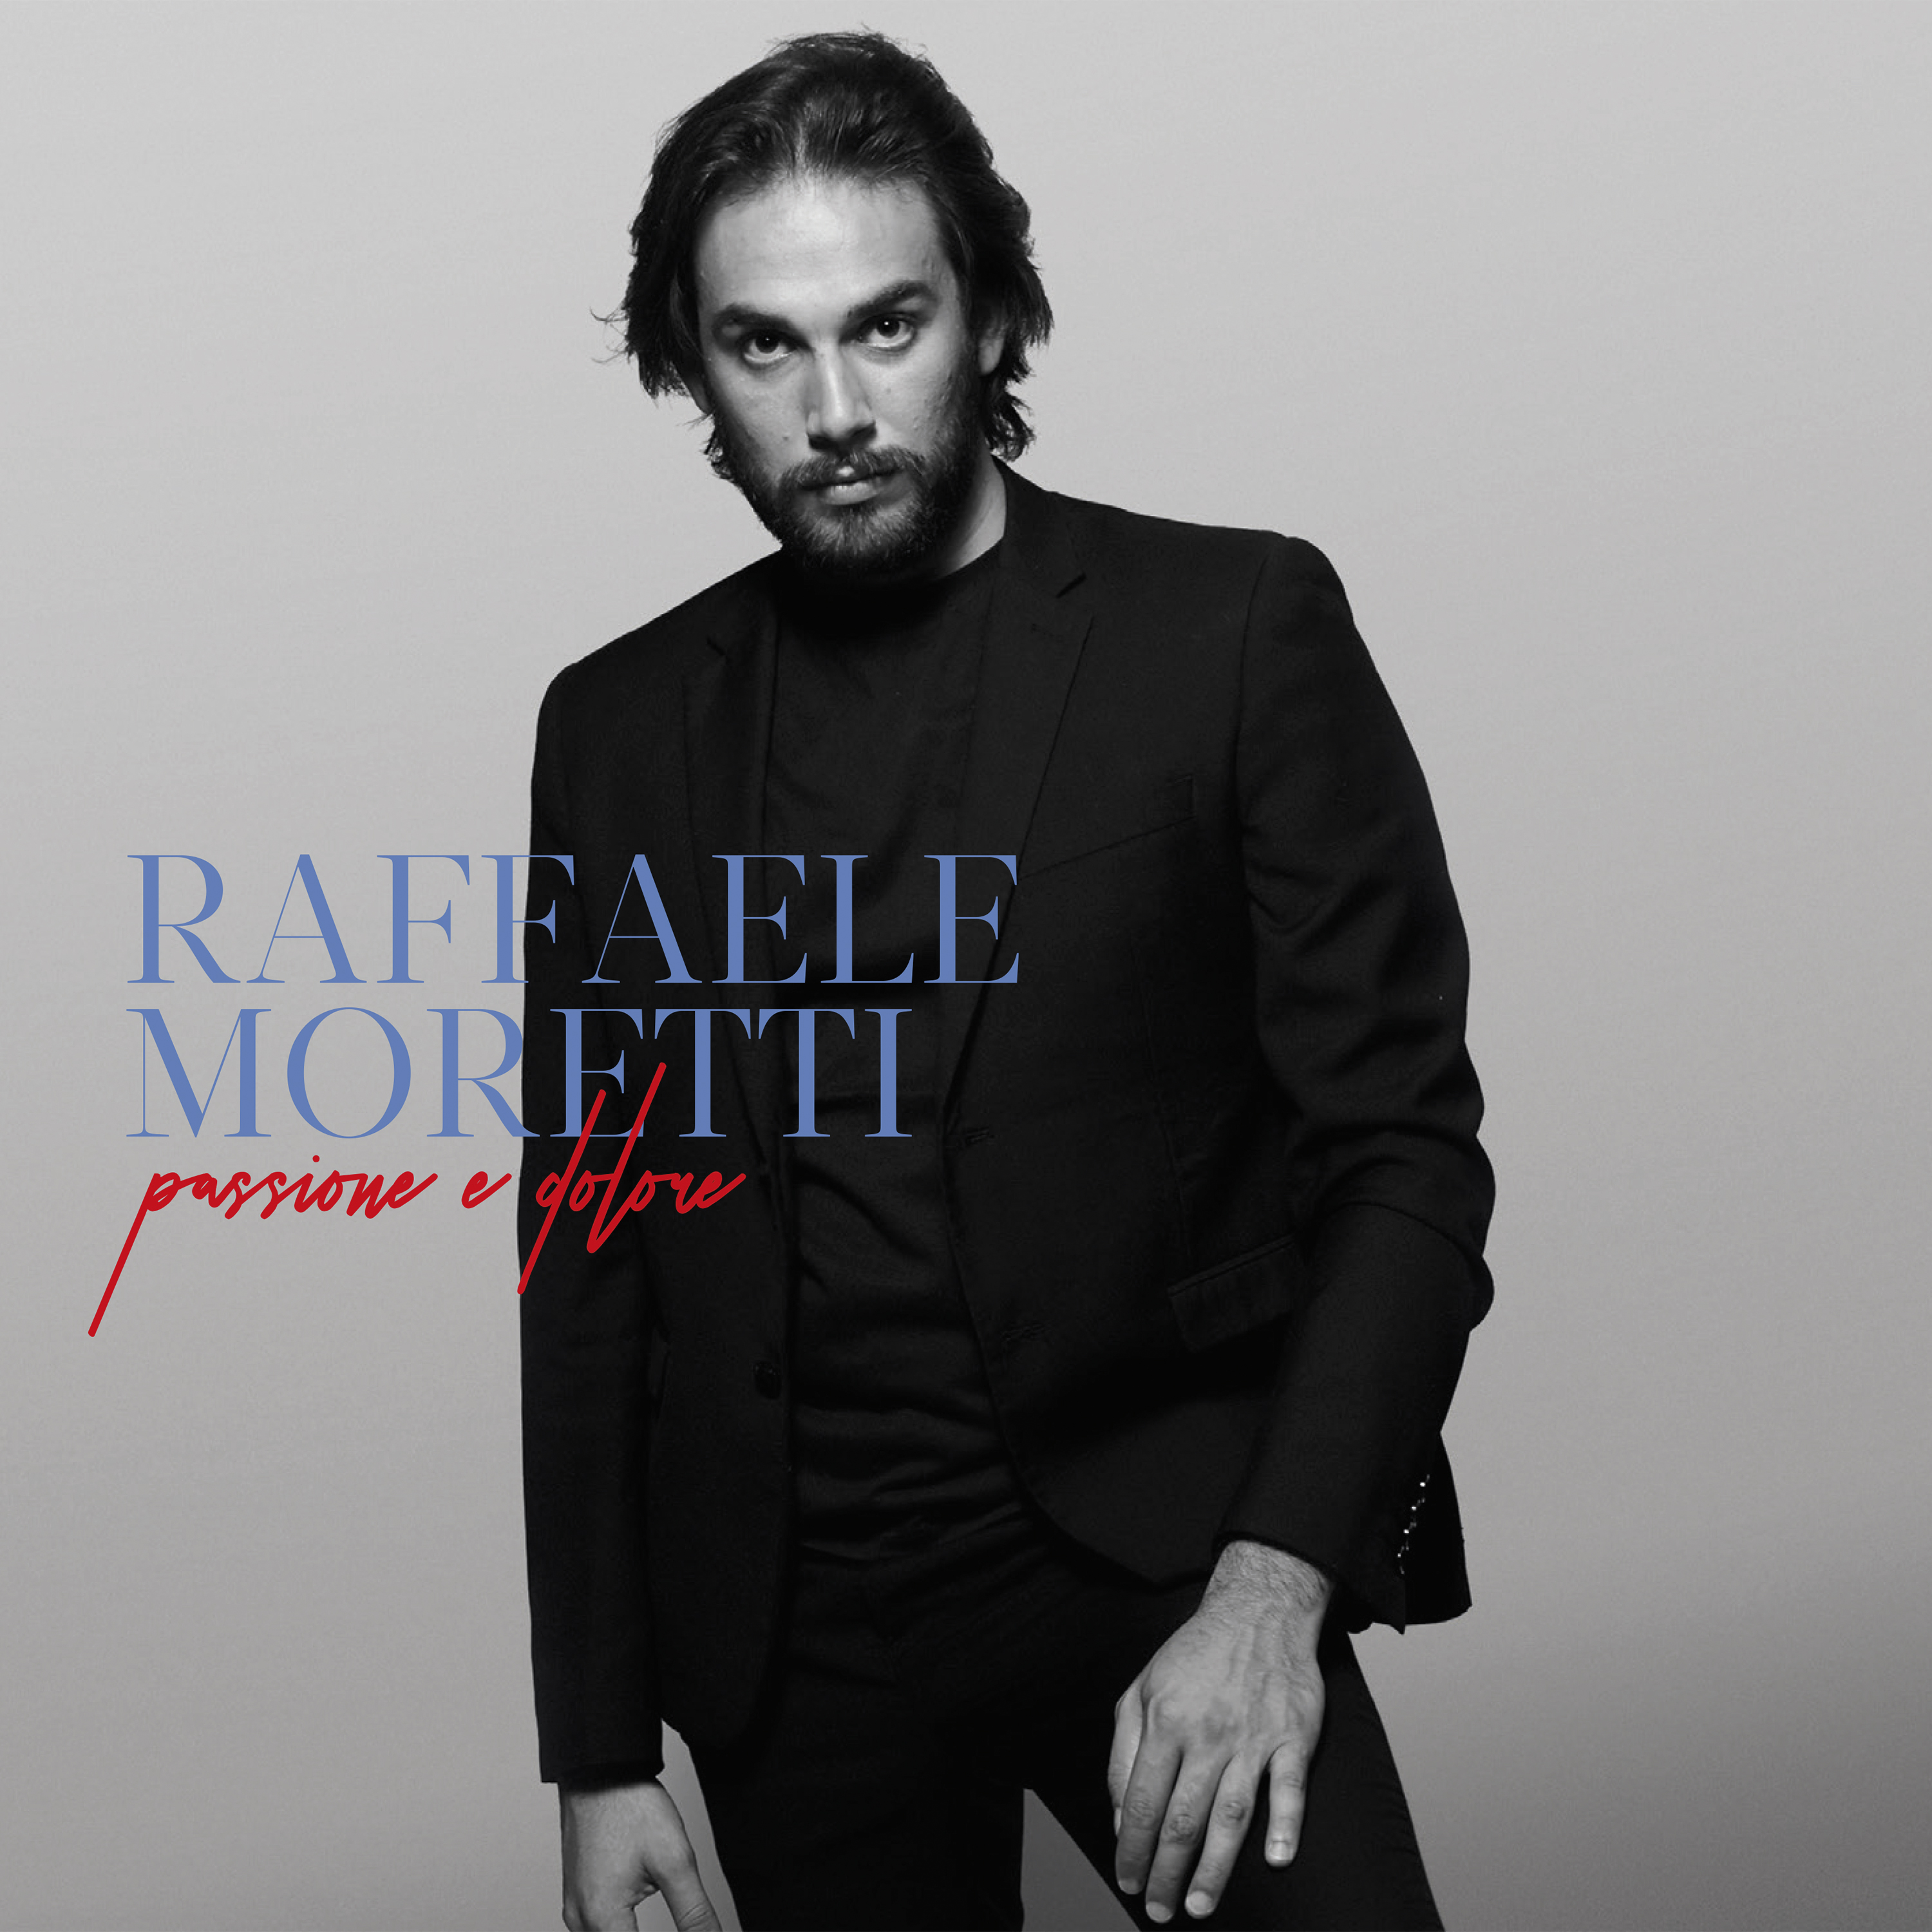  Raffaele Moretti   su tutte le piattaforme digitali  il singolo LIBERO che anticipa l'Album PASSIONE E DOLORE